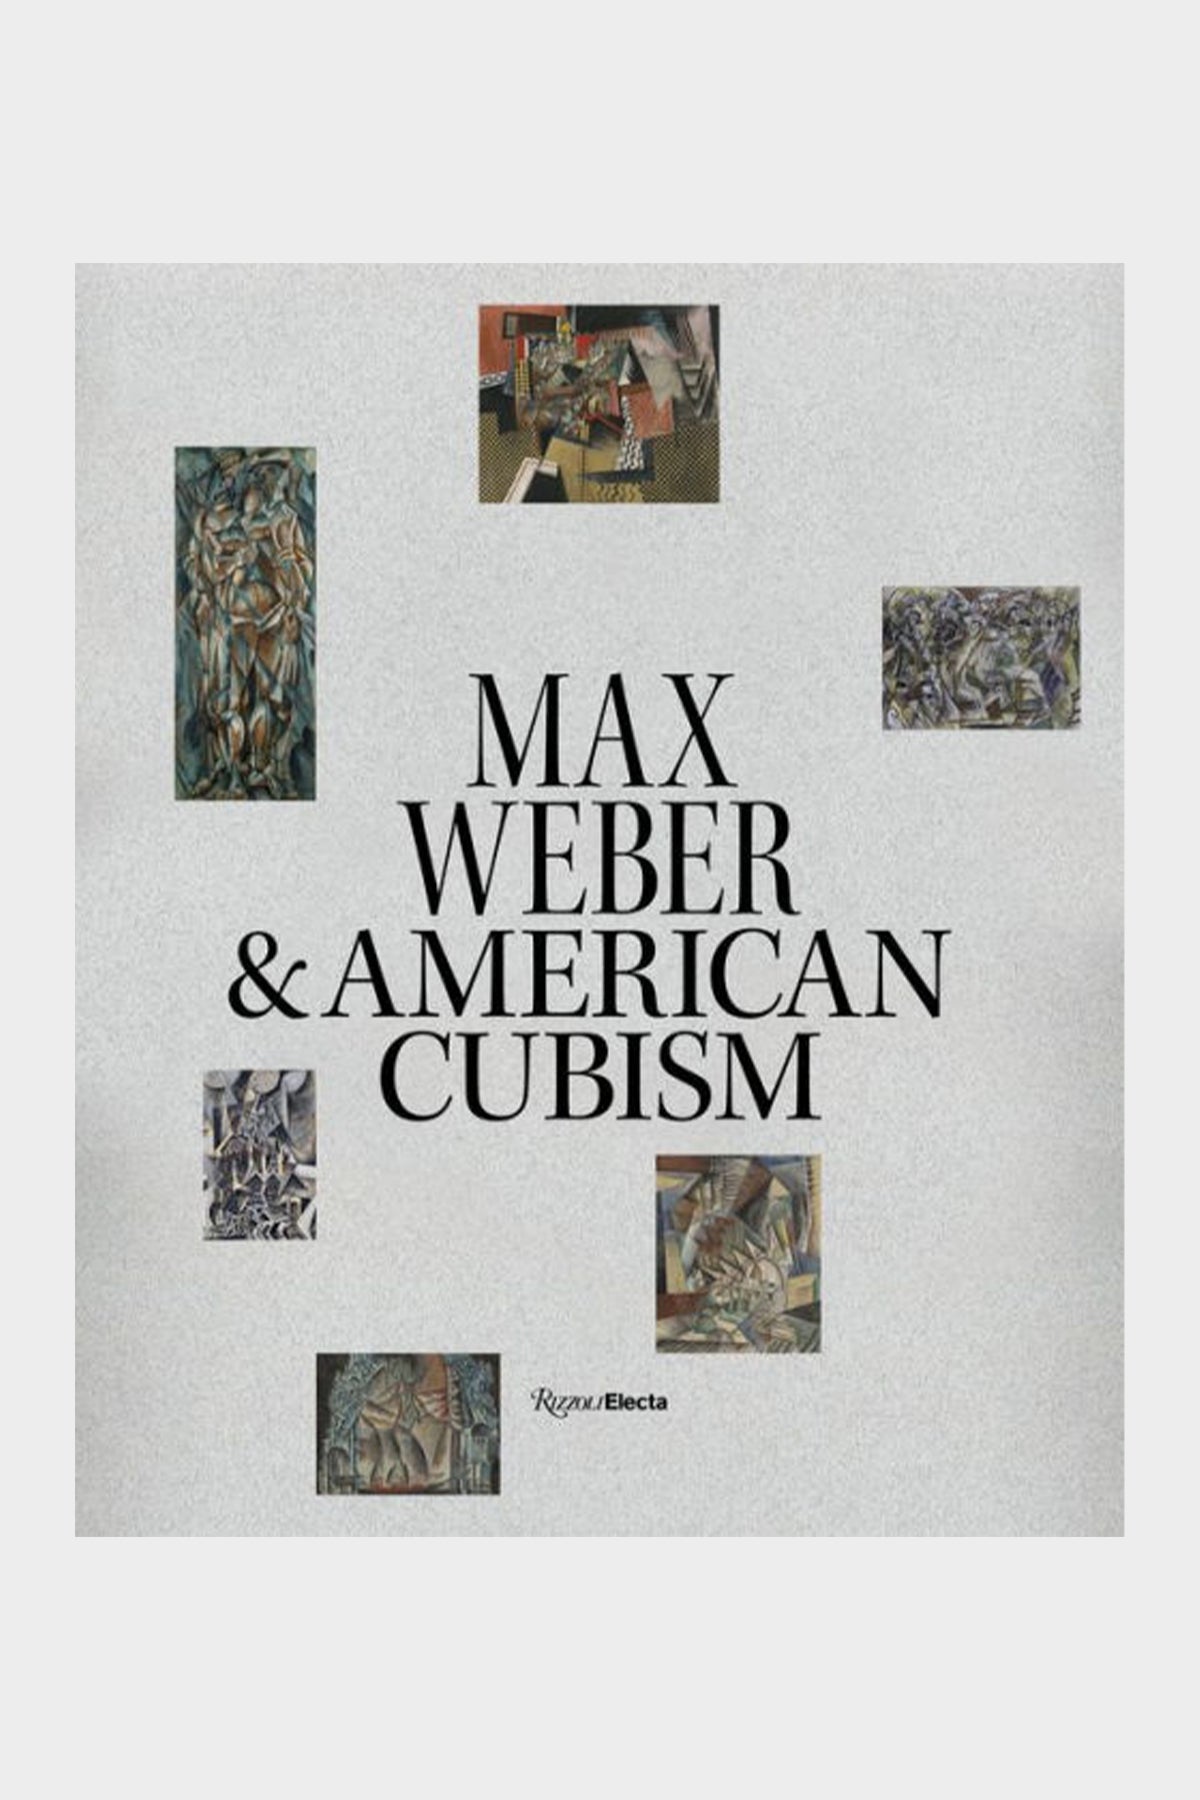 Max Weber and American Cubism - shop-olivia.com